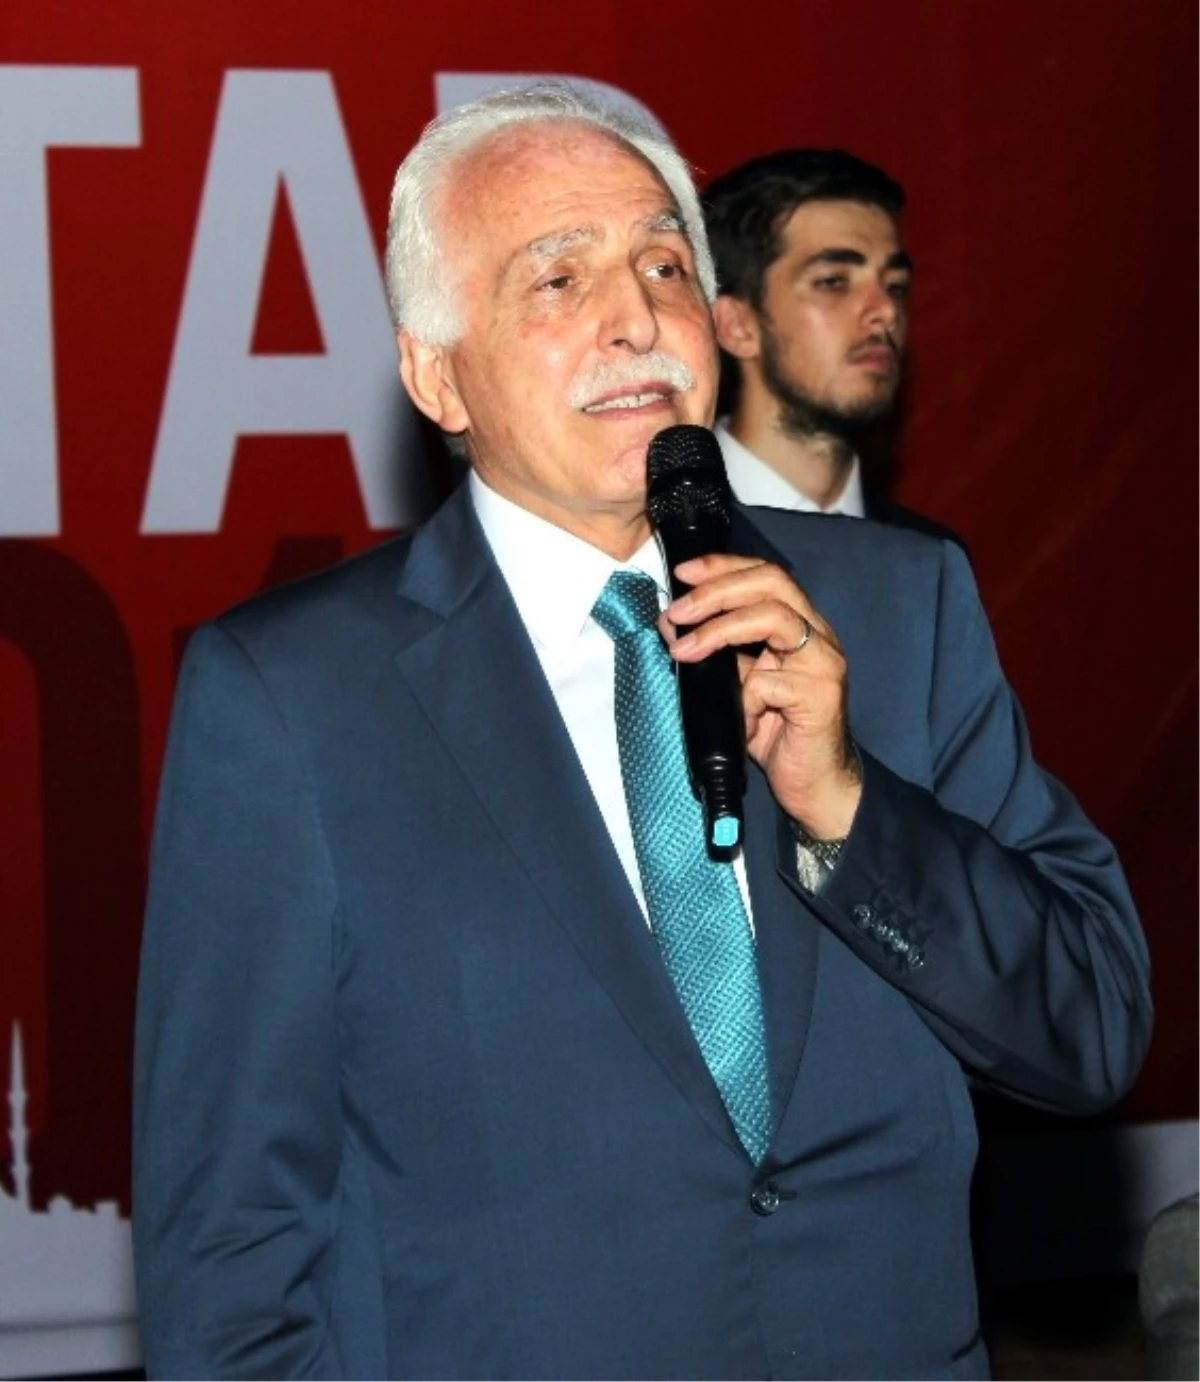 Saadet Partisi Genel Başkanı Mustafa Kamalak Açıklaması